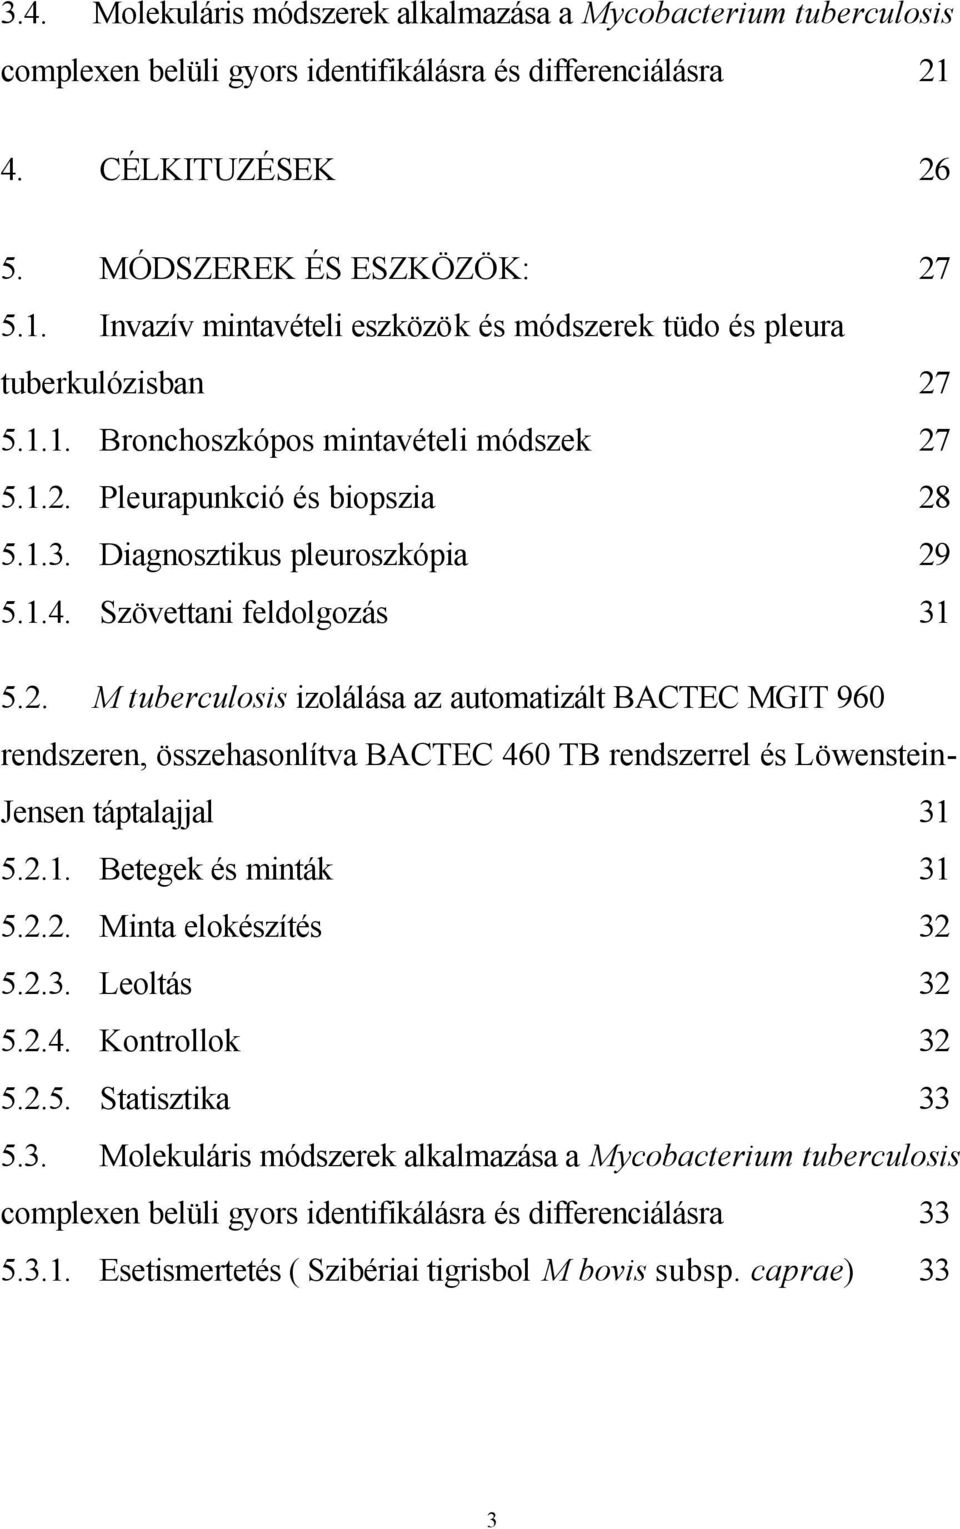 1.3. Diagnosztikus pleuroszkópia 29 5.1.4. Szövettani feldolgozás 31 5.2. M tuberculosis izolálása az automatizált BACTEC MGIT 960 rendszeren, összehasonlítva BACTEC 460 TB rendszerrel és Löwenstein- Jensen táptalajjal 31 5.